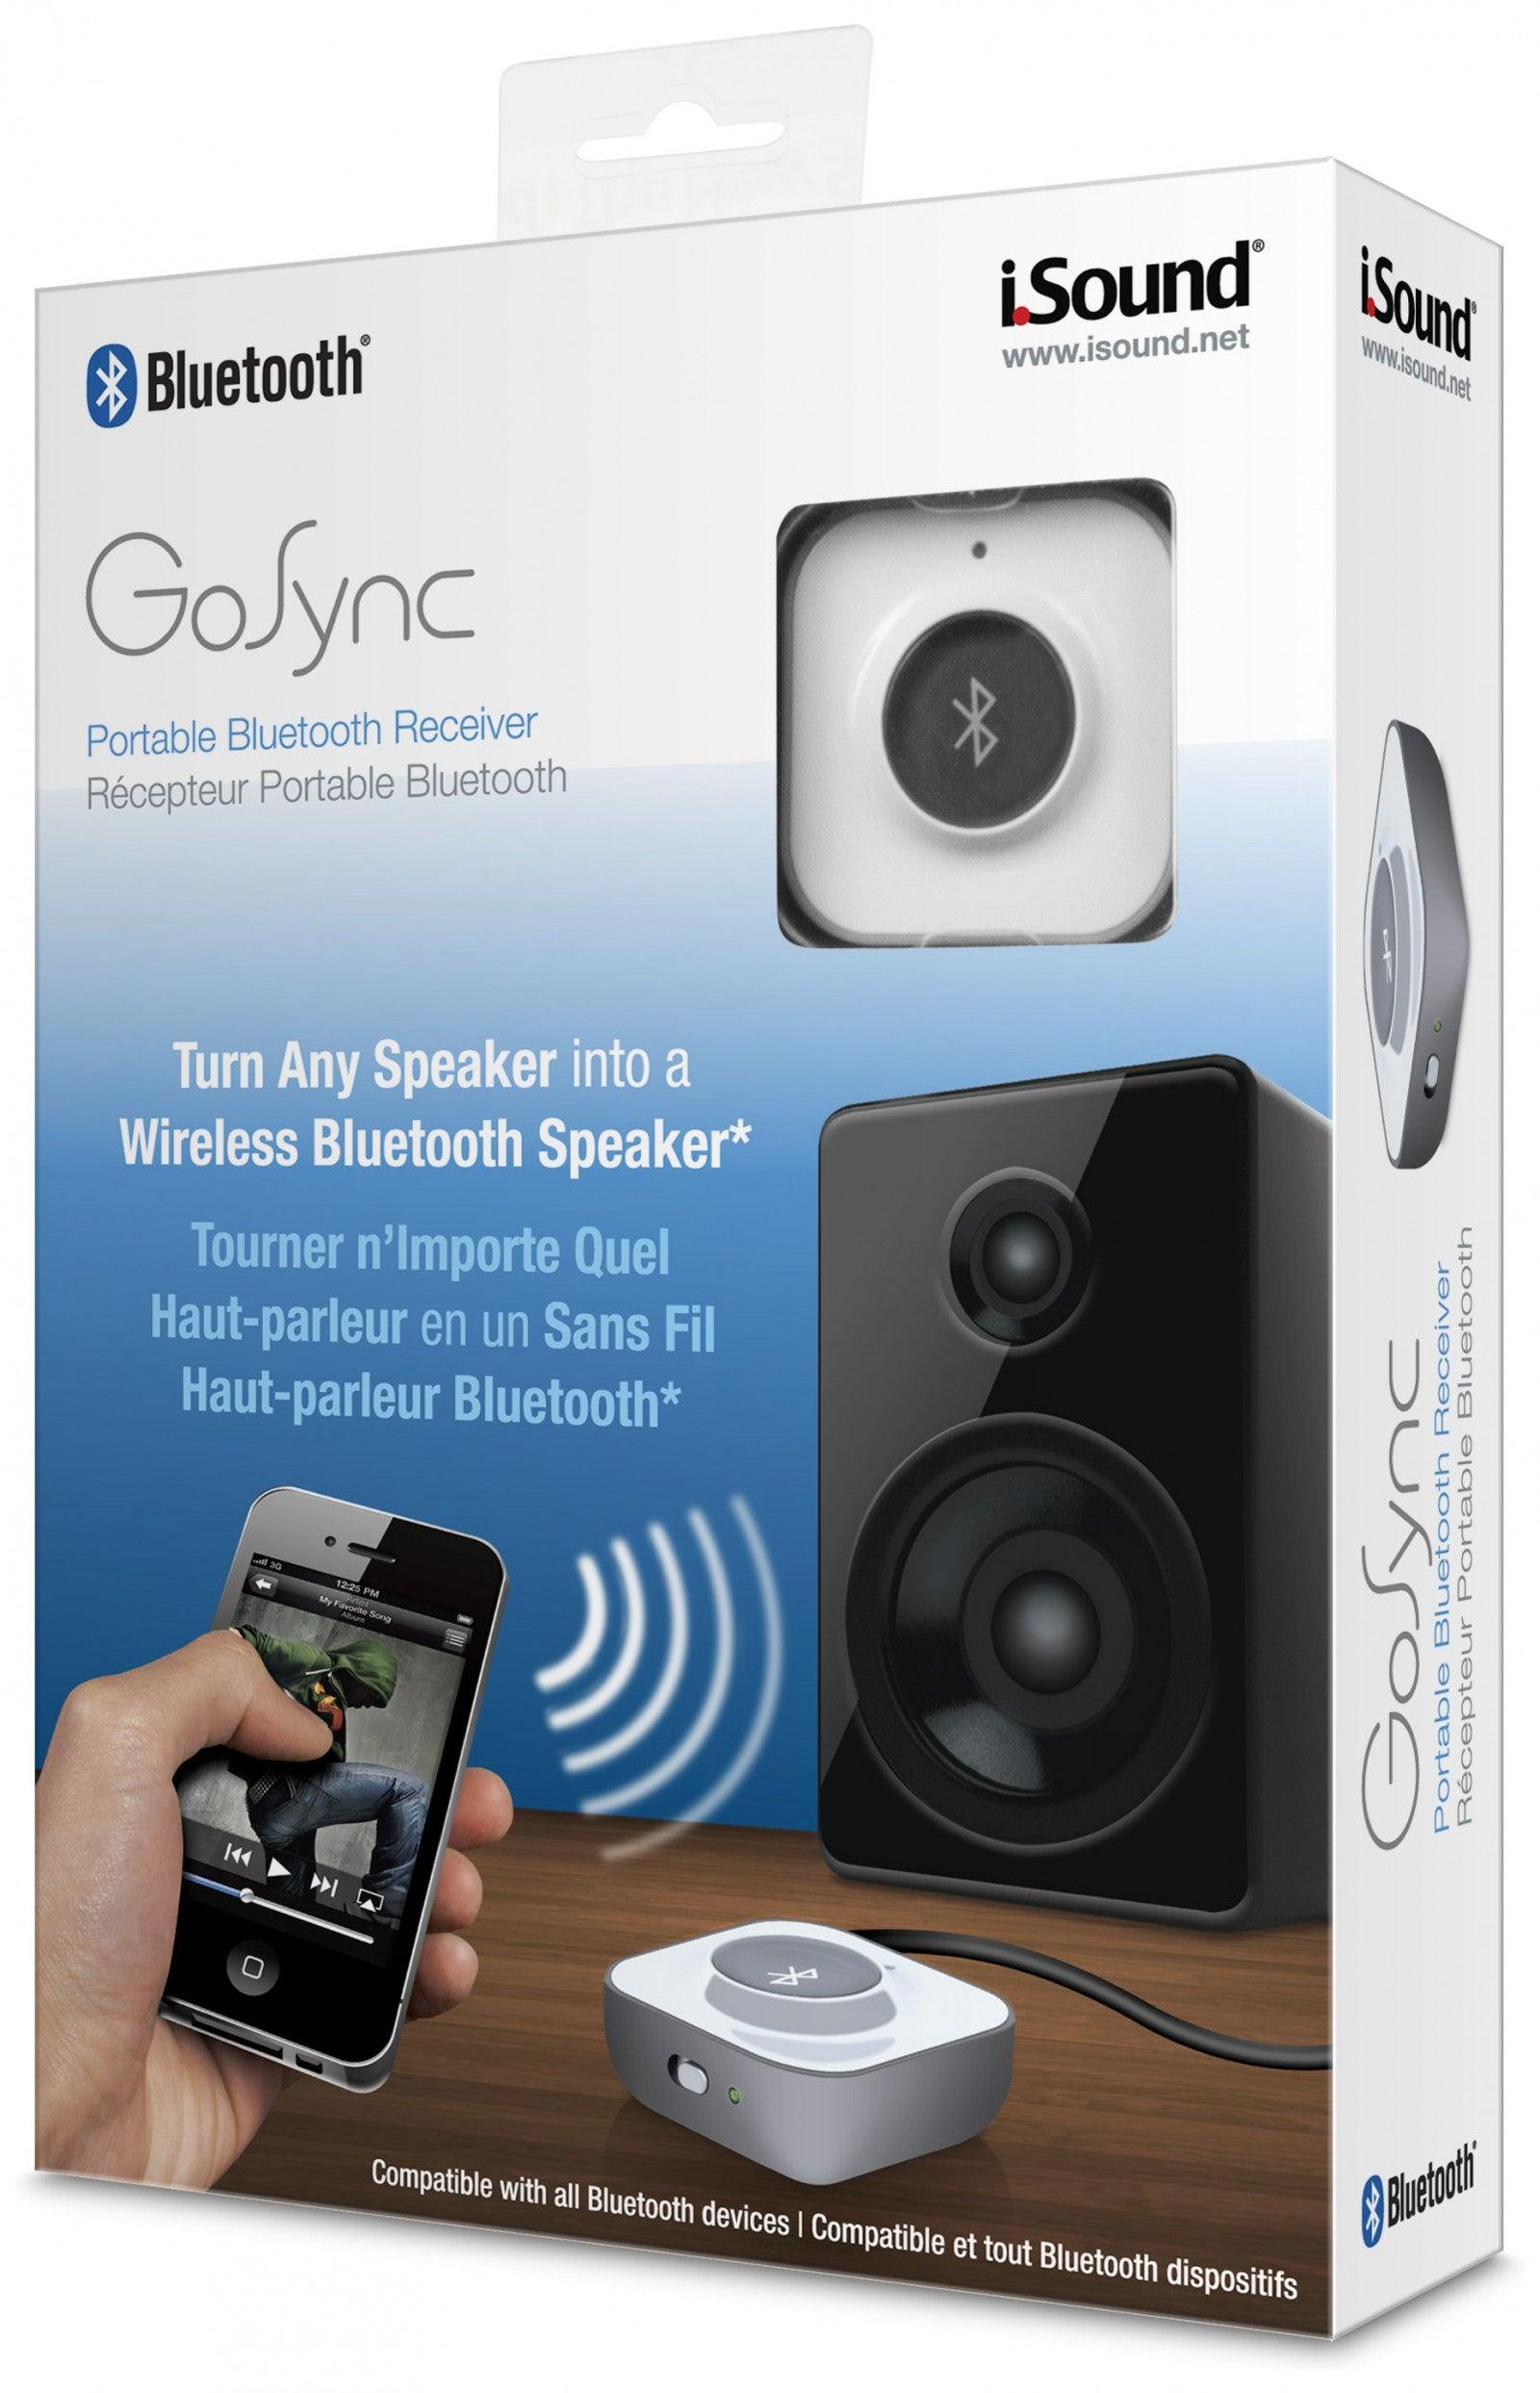 VR-83756 iSound Bluetooth Wireless Gosync - White - iSOUND - Titan Pop Culture